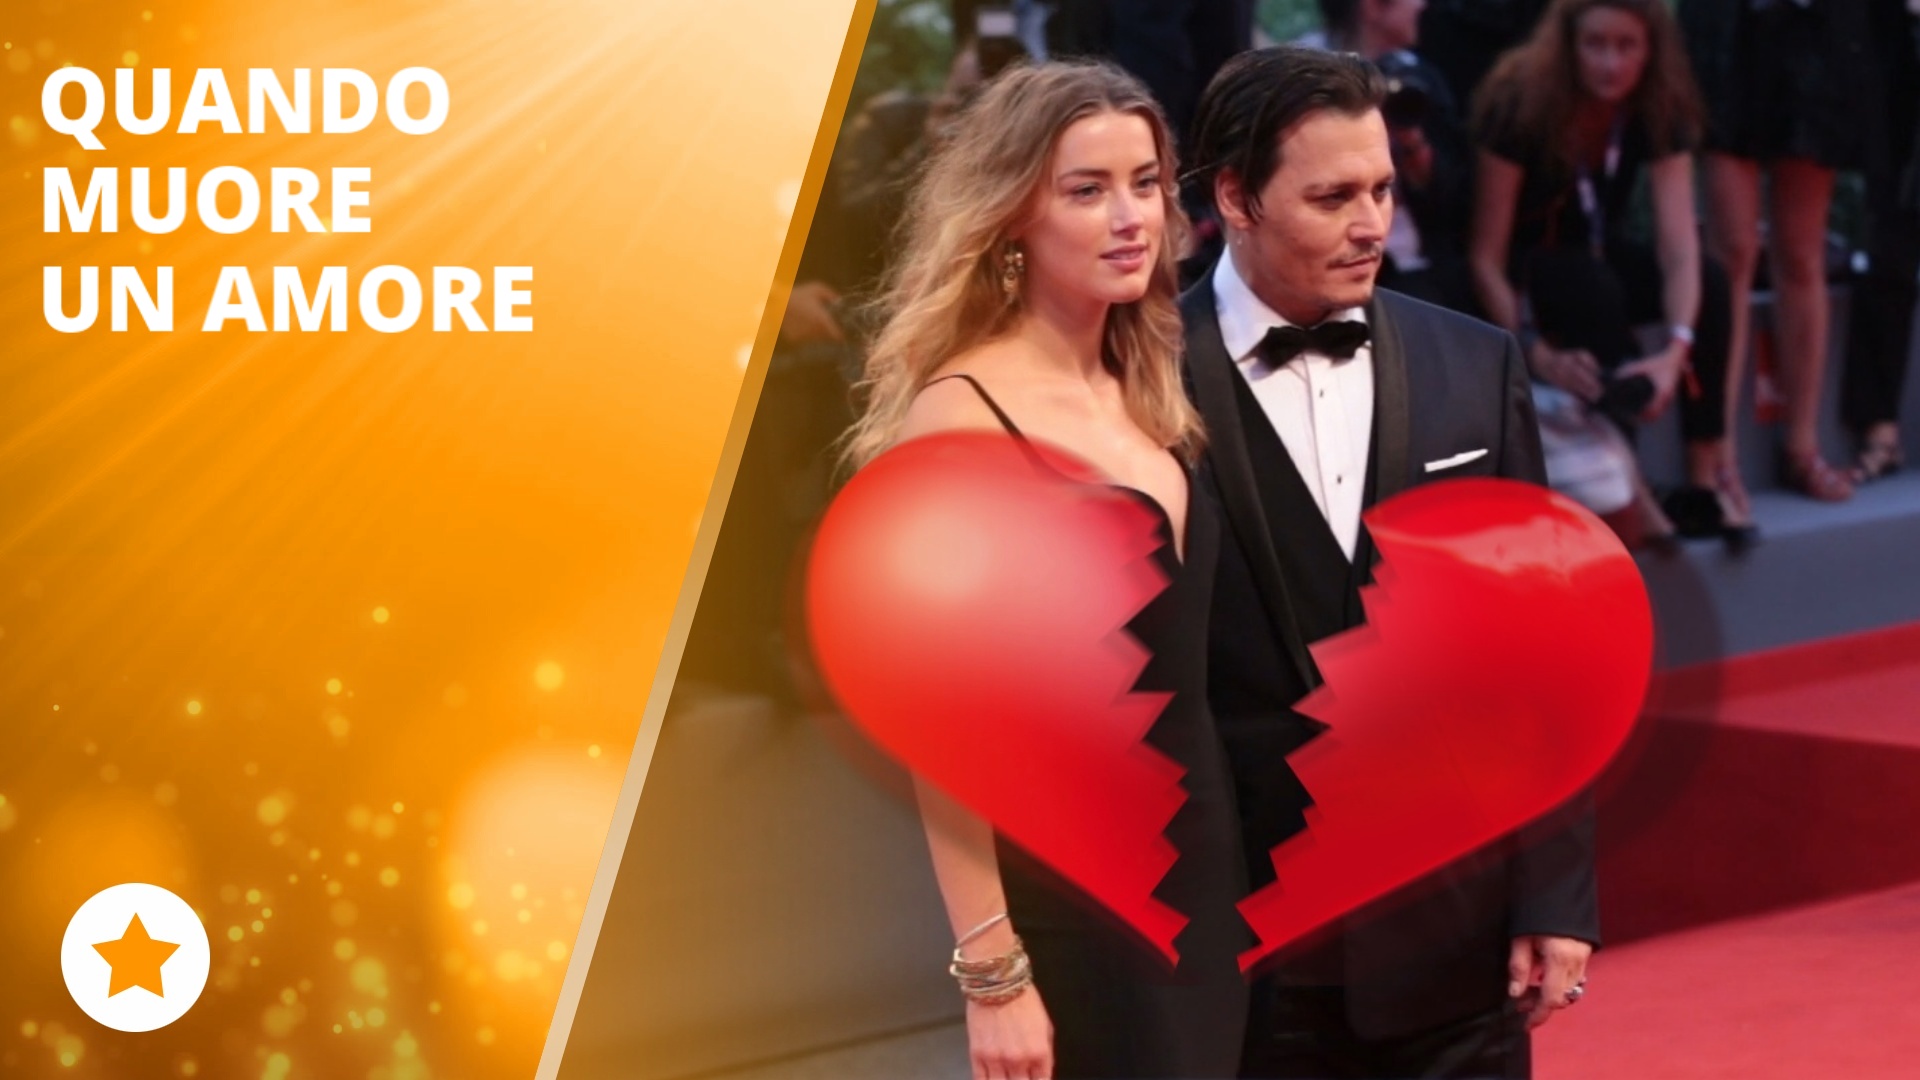 Johnny Depp e Amber Heard sull'orlo del divorzio